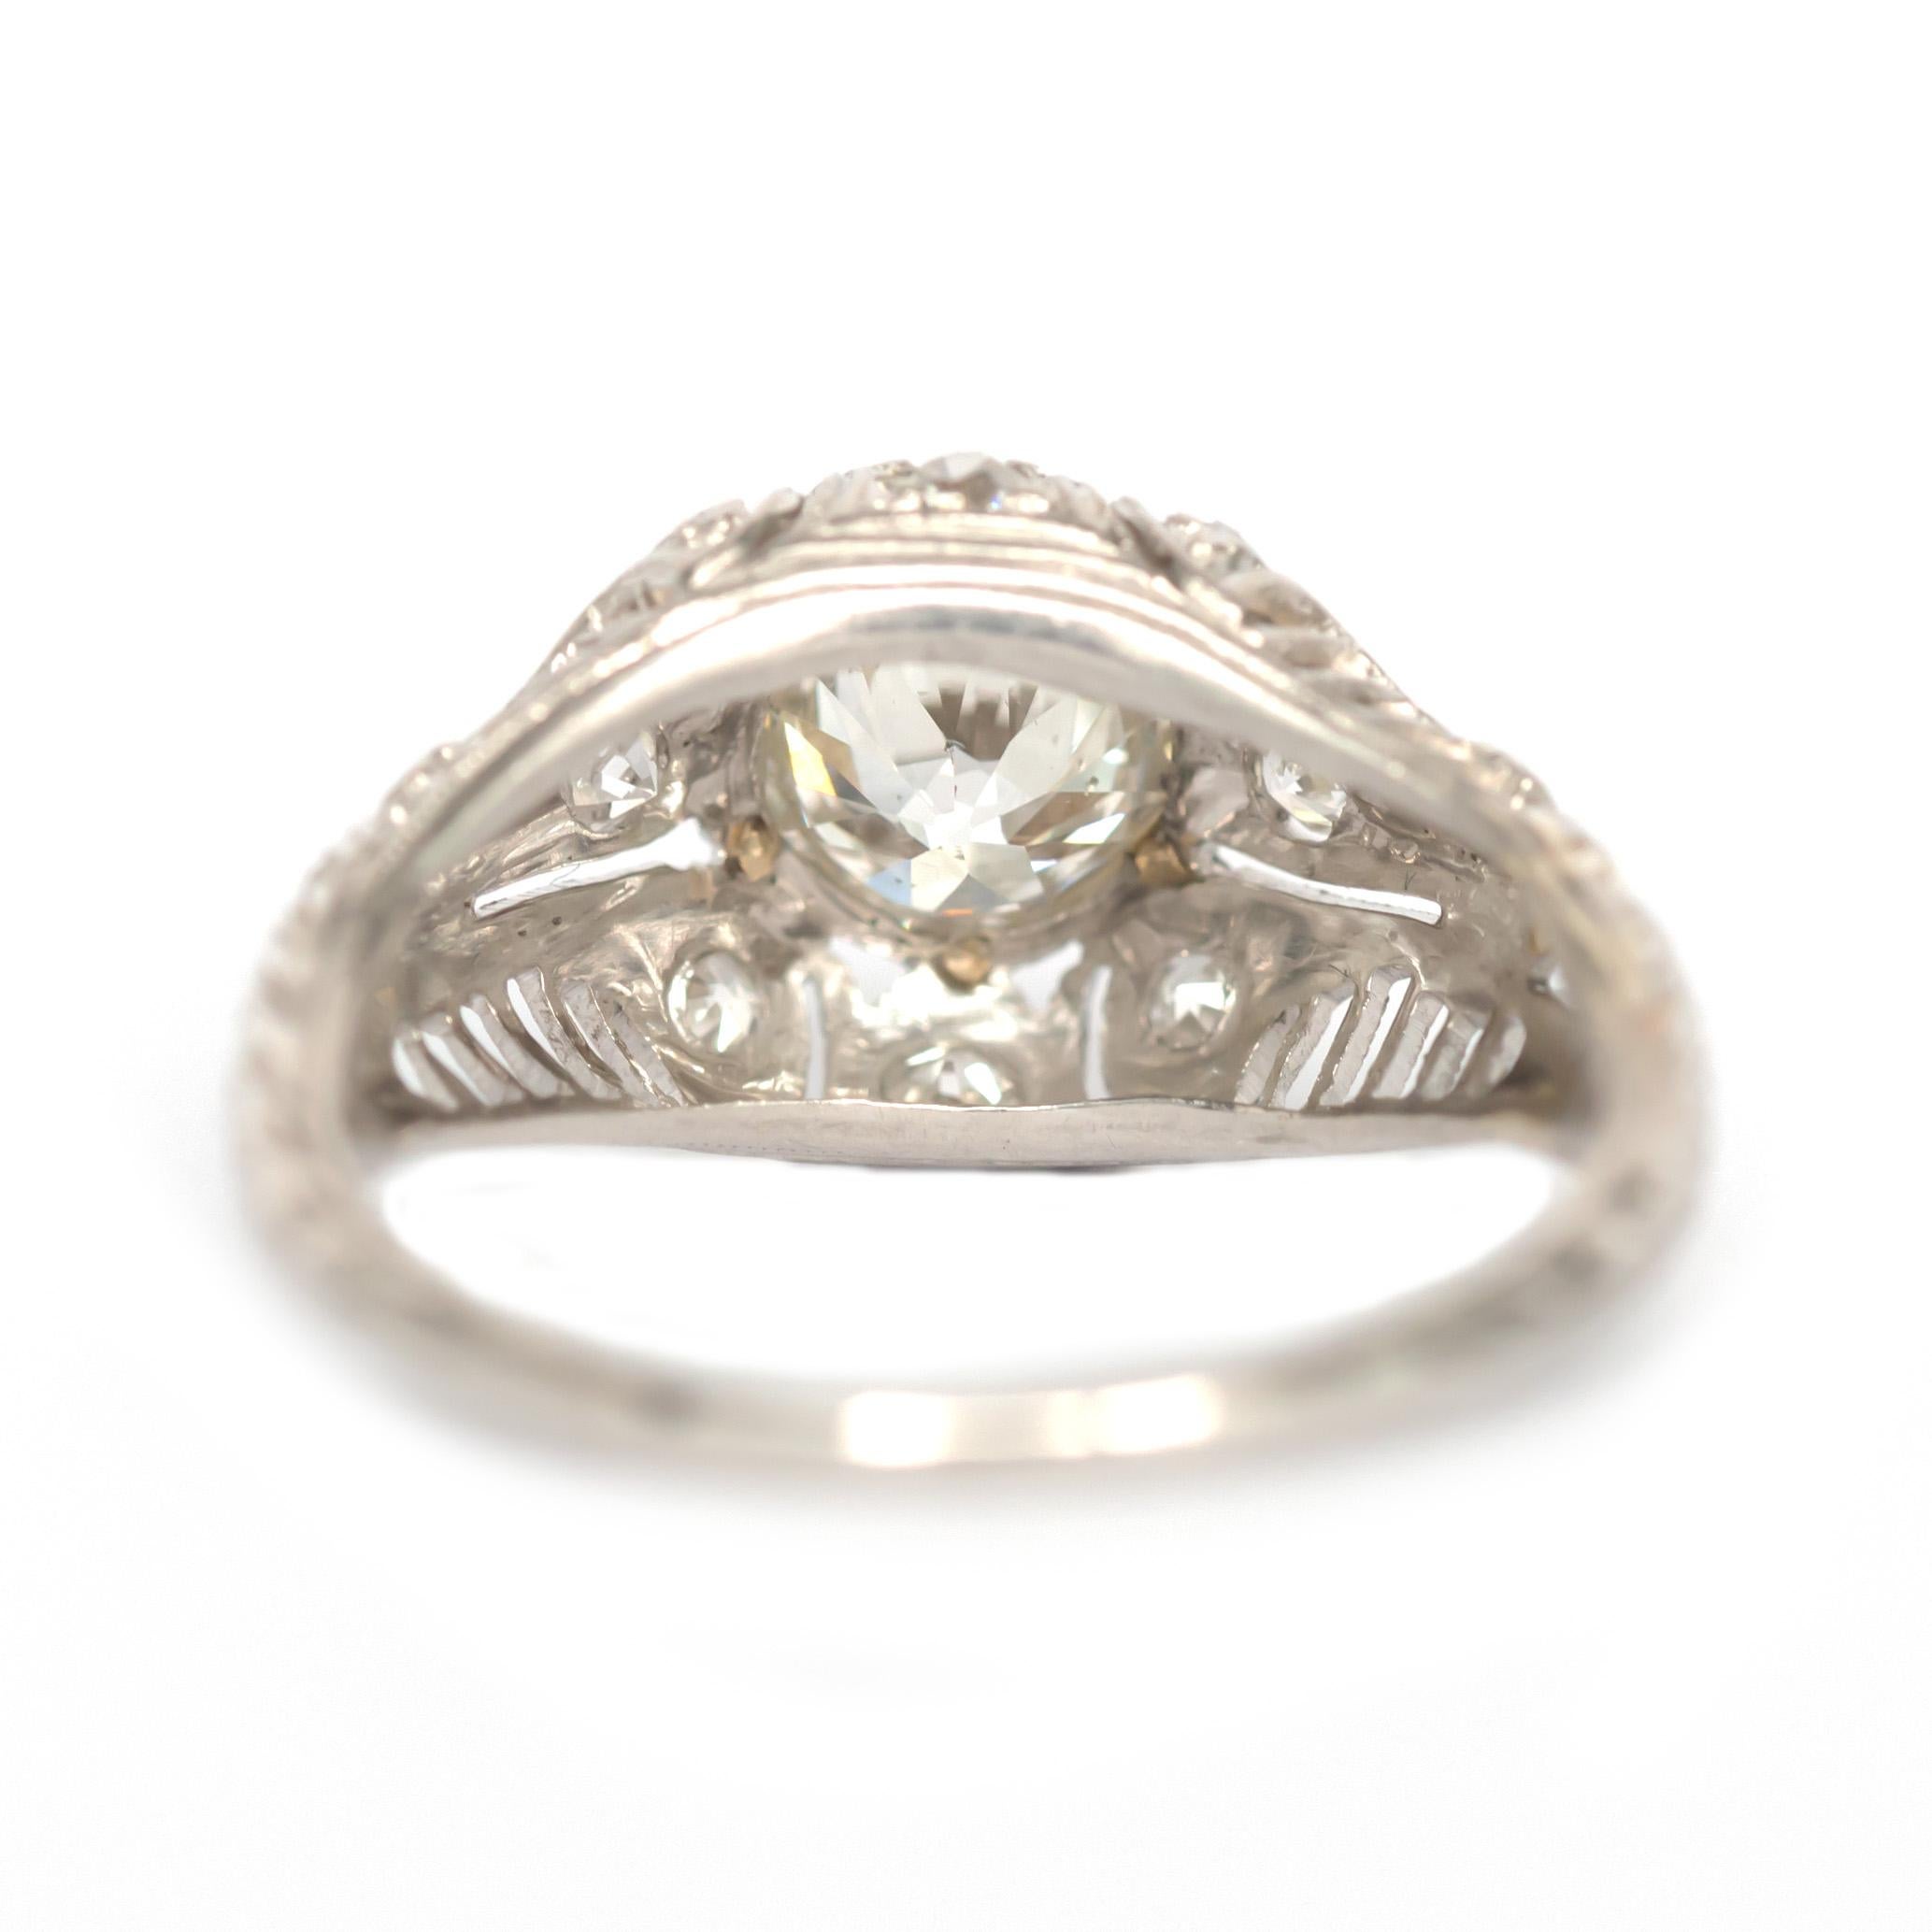 1/70th of a carat diamond ring